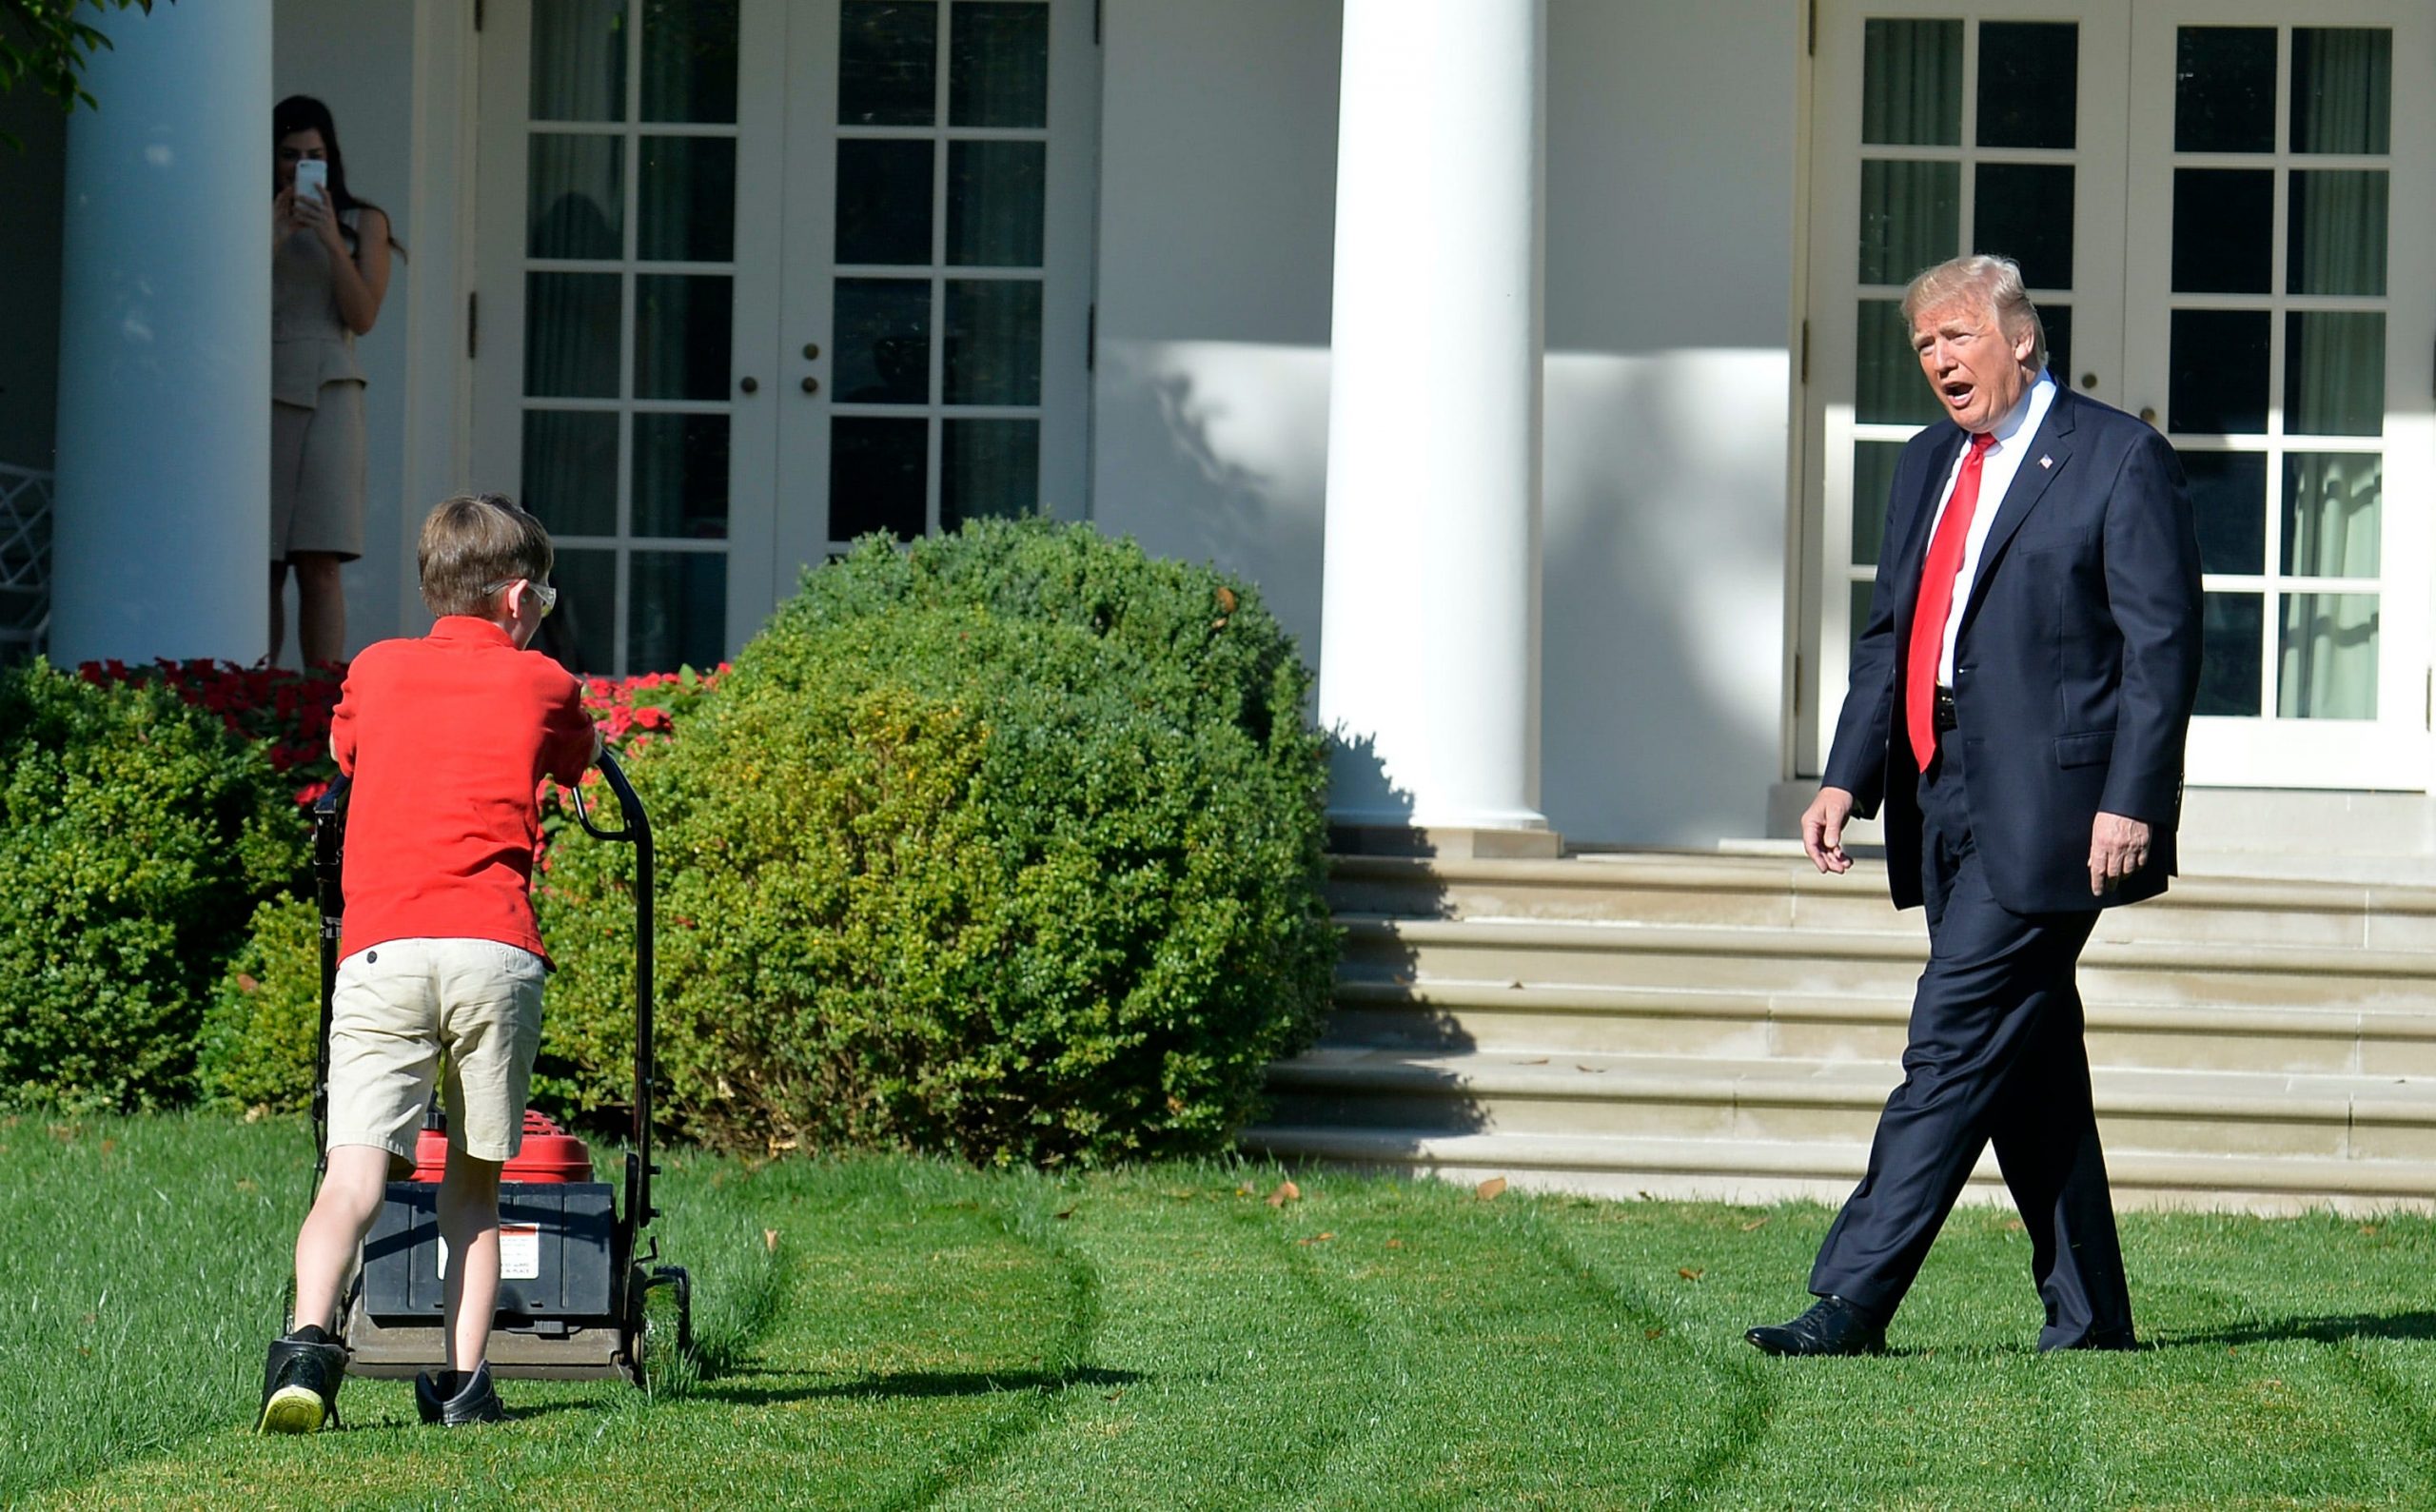 President Donald Trump verheft zijn stem terwijl de 11-jarige Frank Giaccio het gazon van het Witte Huis maait. Foto: Mike Theiler/AFP via Getty Images